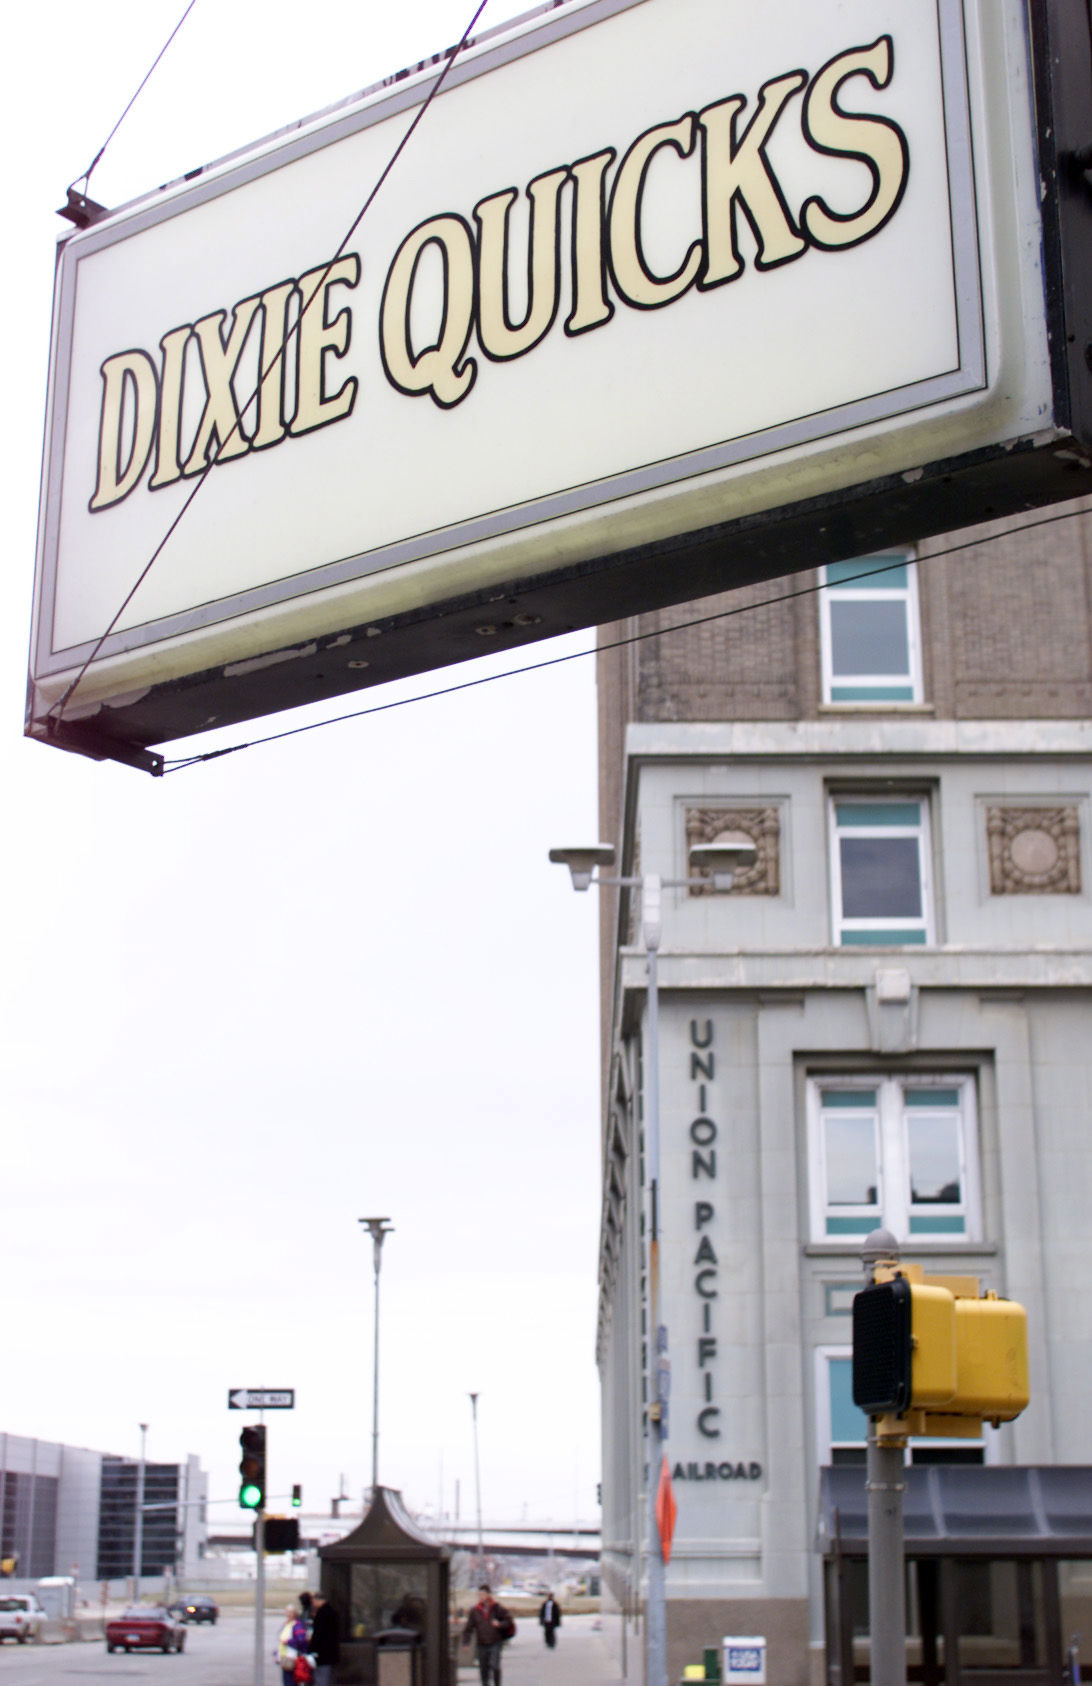 DixieQuick's